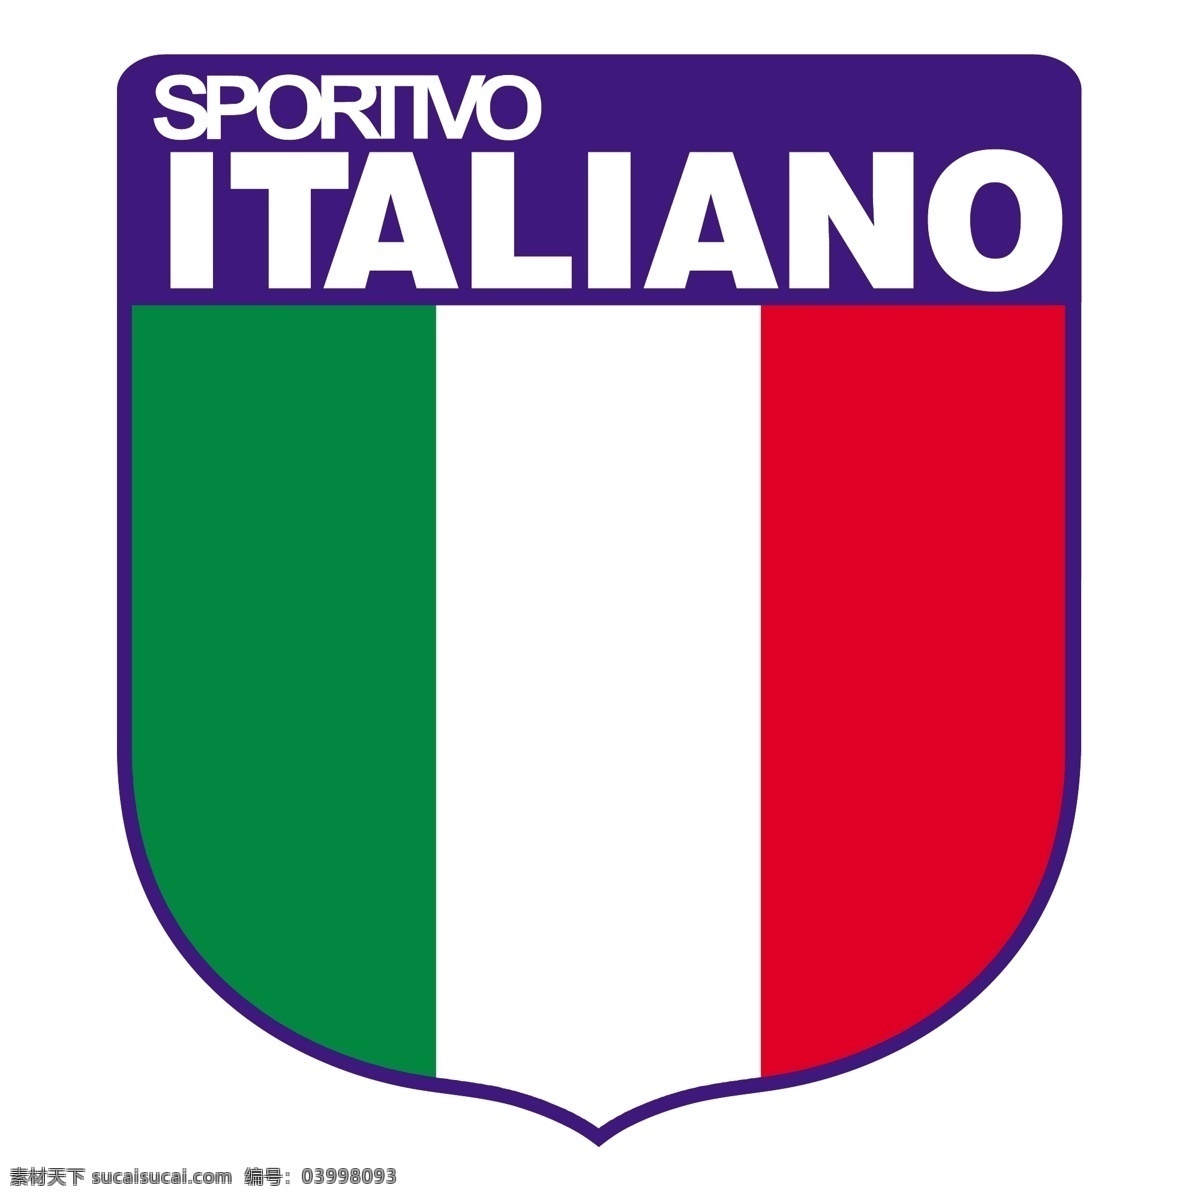 意大利队 拉科鲁尼亚 意大利语 意大利队0 矢量图 其他矢量图